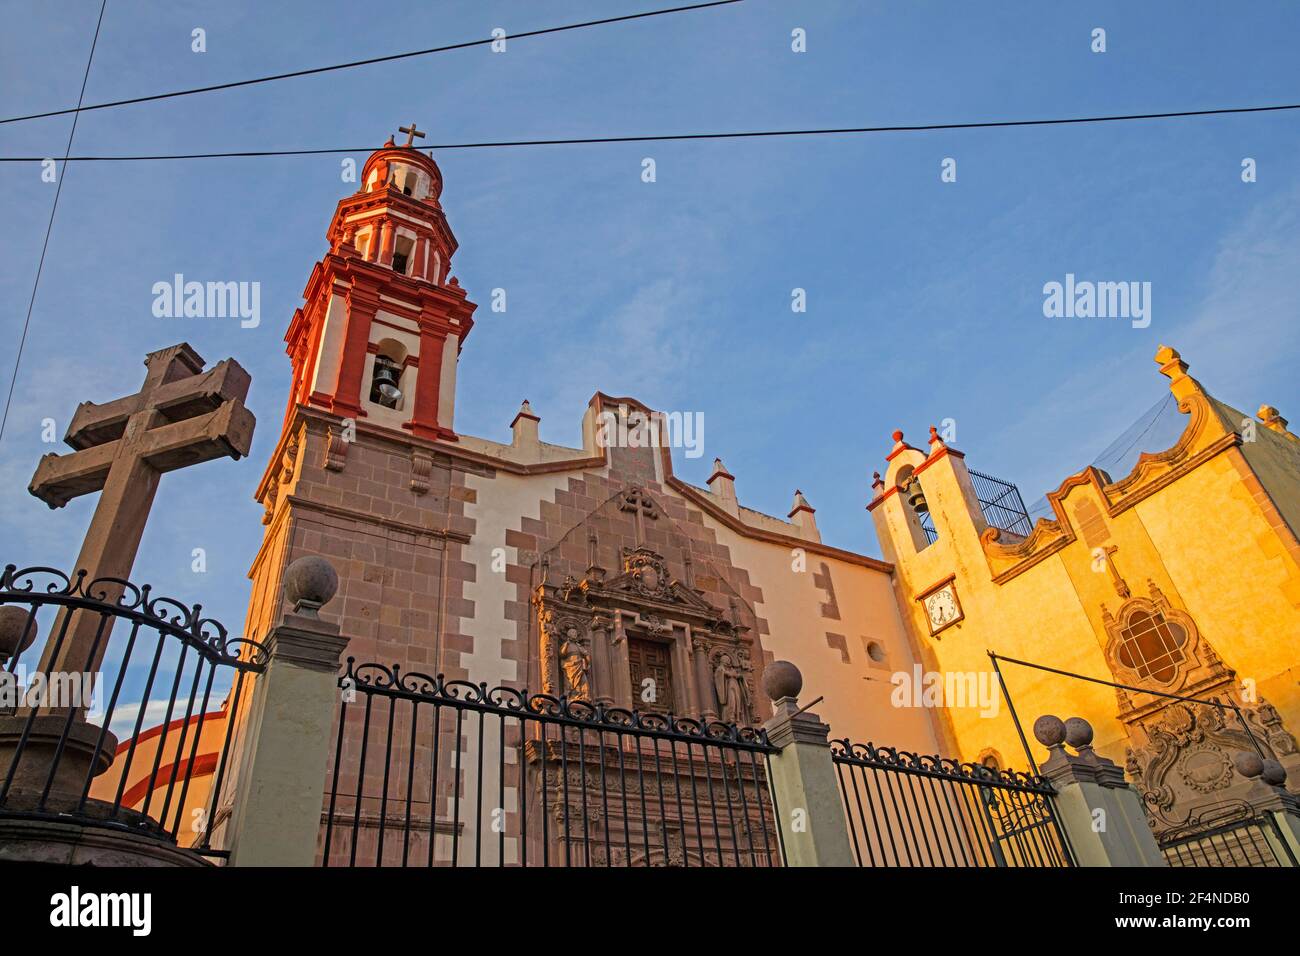 Parroquia de Santiago, église jésuite dans le centre-ville historique de Querétaro, au nord-centre du Mexique Banque D'Images